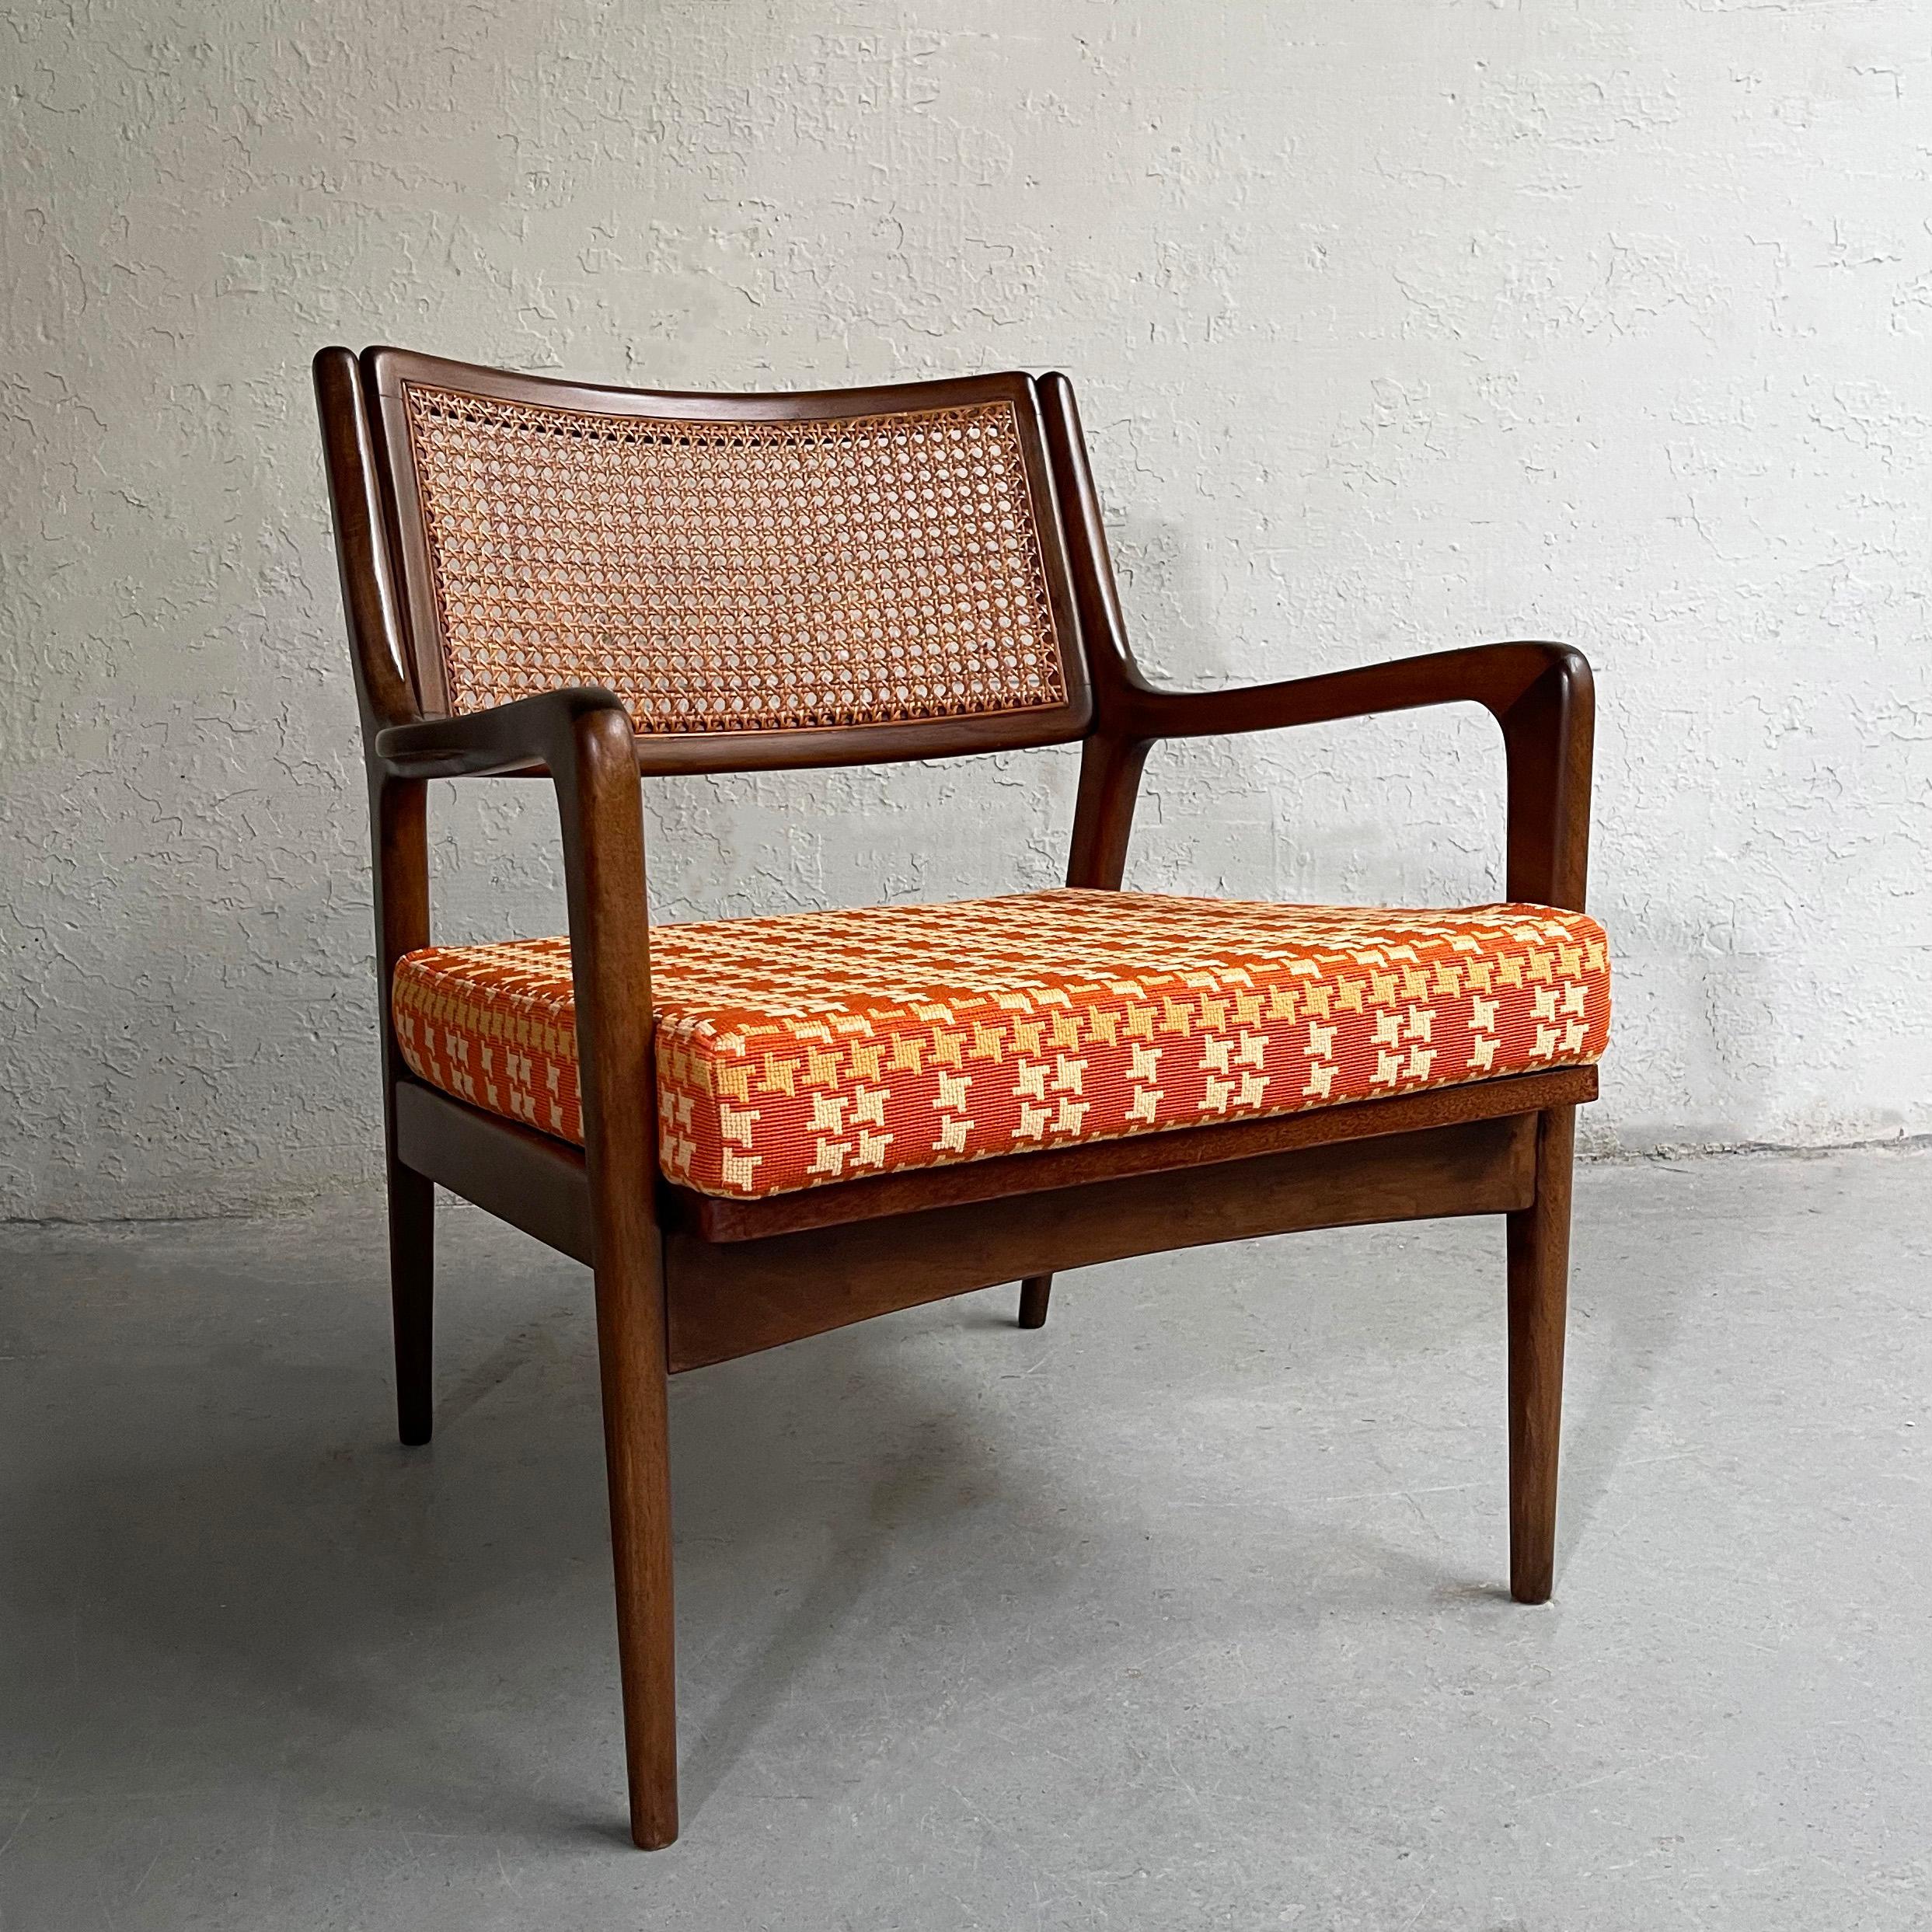 Wunderbar detaillierter, moderner Sessel aus Nussbaumholz mit Rückenlehne und neu gepolstertem Sitzkissen aus einer lebhaften Leinenmischung mit Hahnentrittmuster.